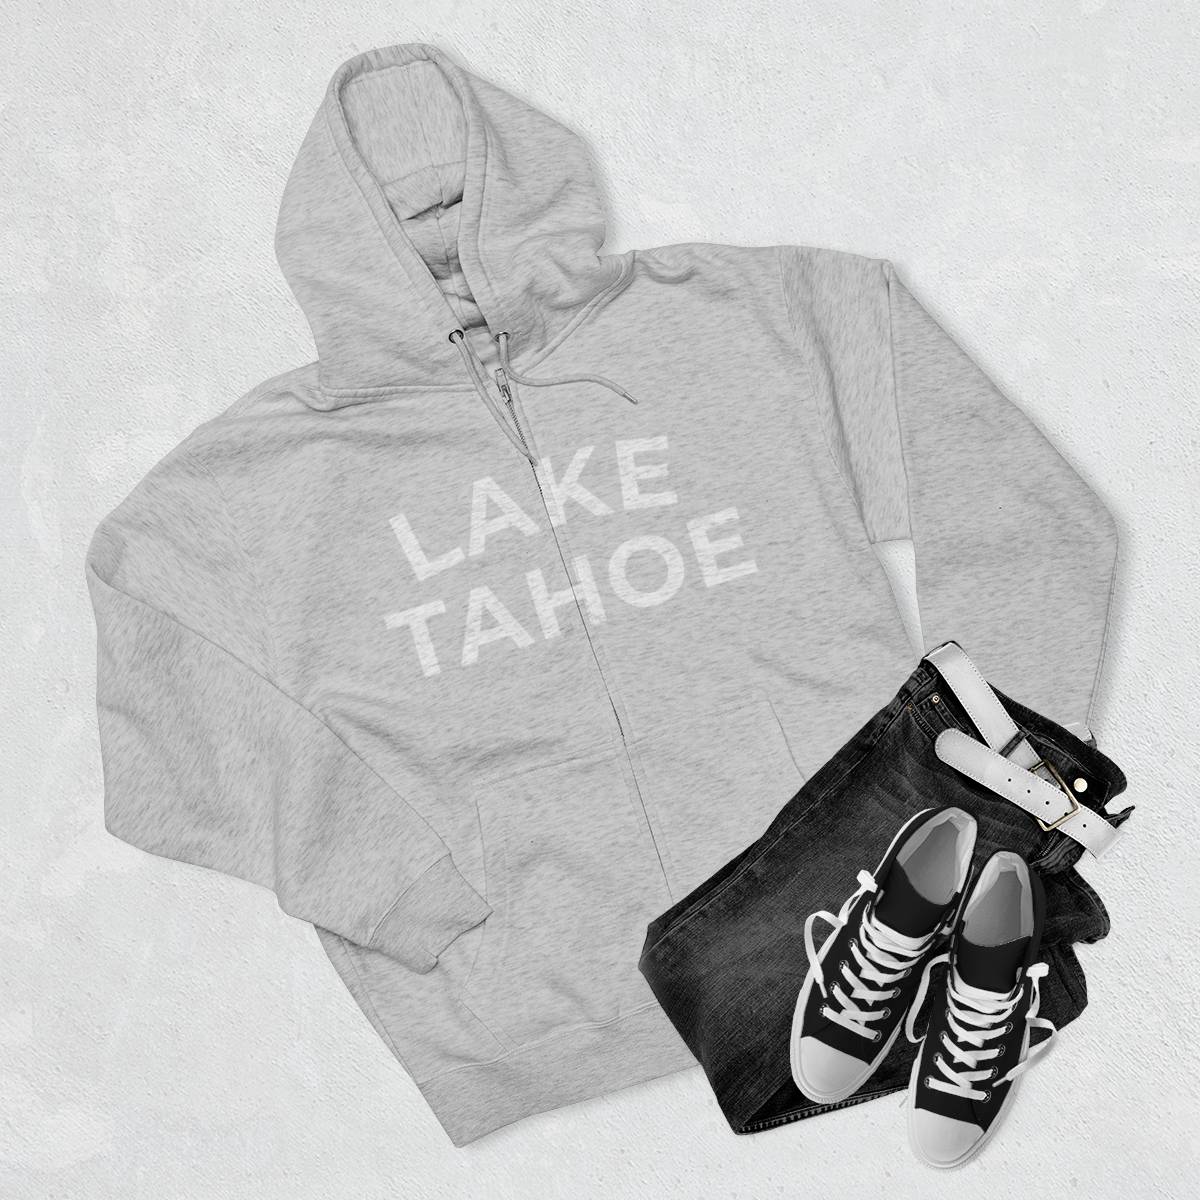 Lake Tahoe Classic Zip Hoodie Grey